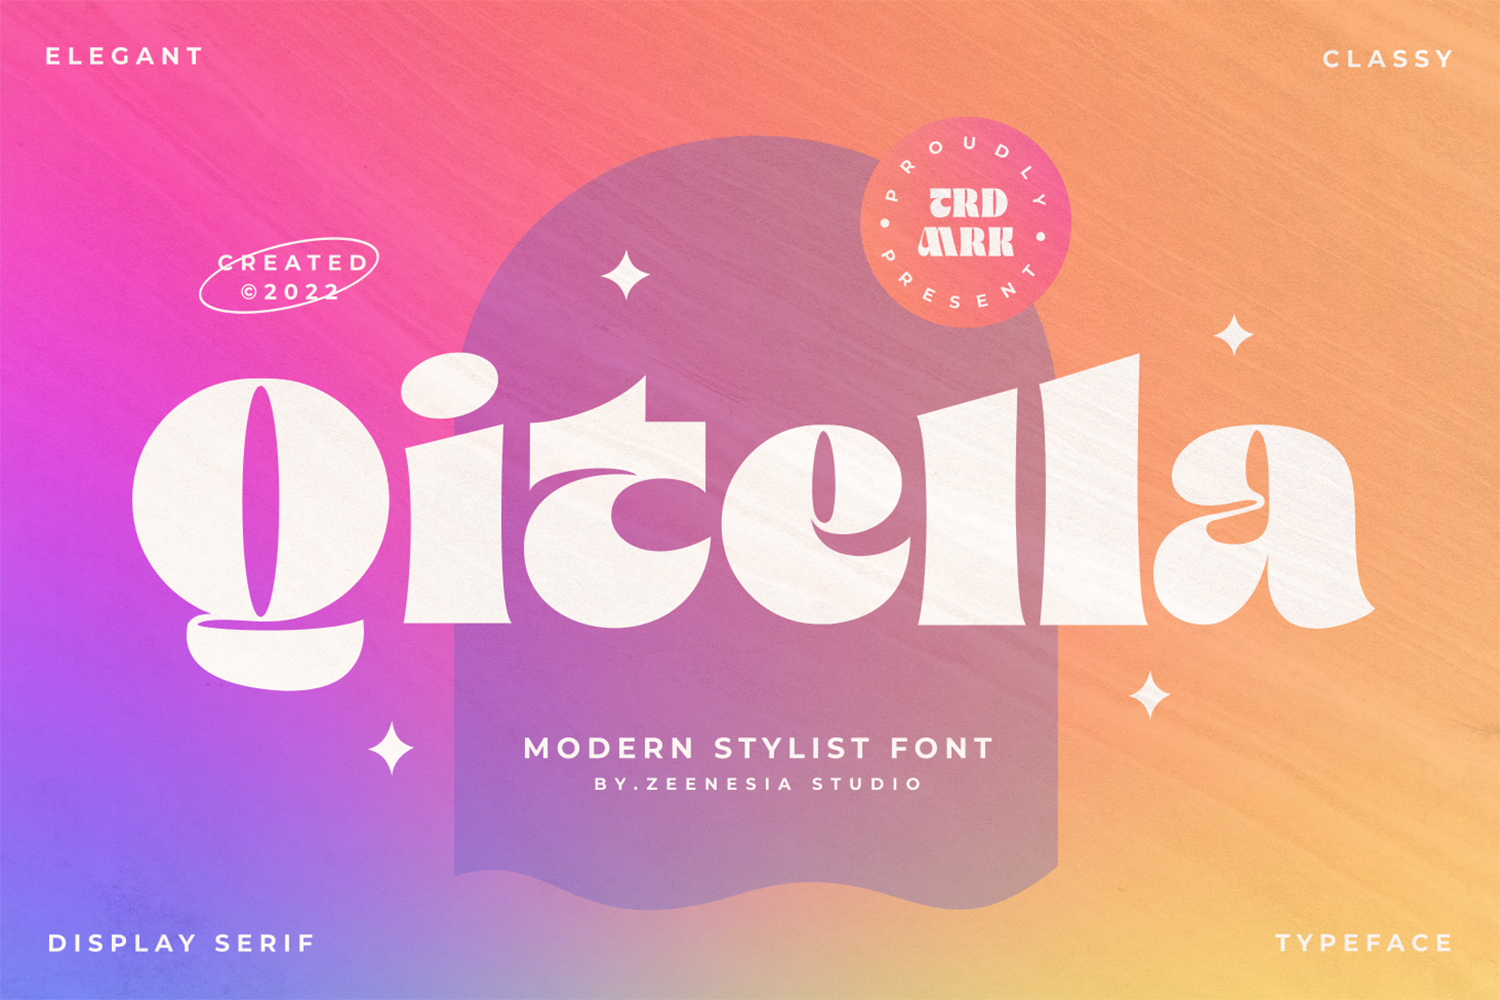 Qitella Free Font